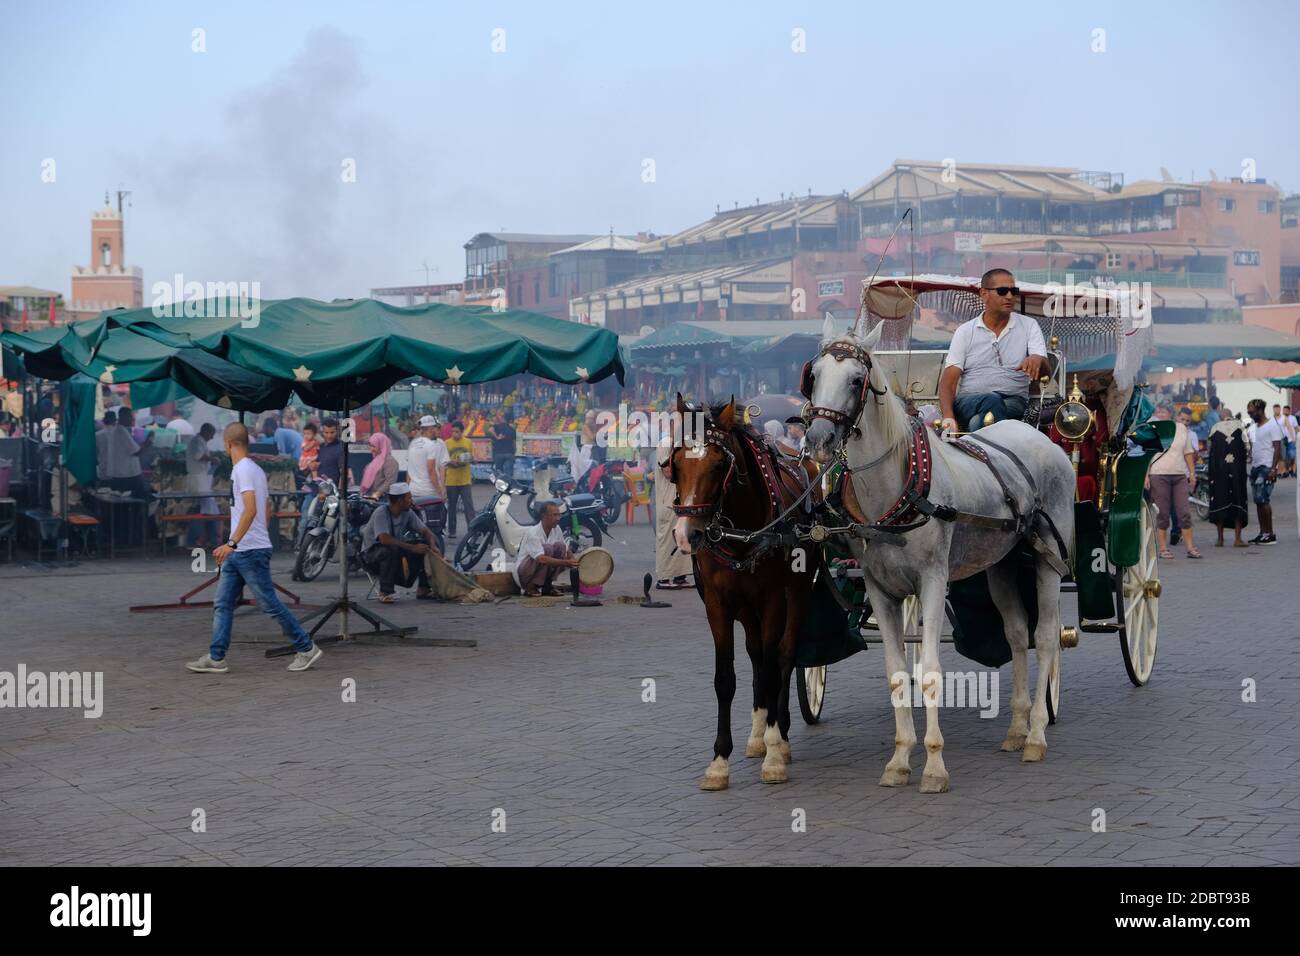 Marruecos Marrakech - el bullicio del mercado en la plaza Djemaa el Fna Foto de stock